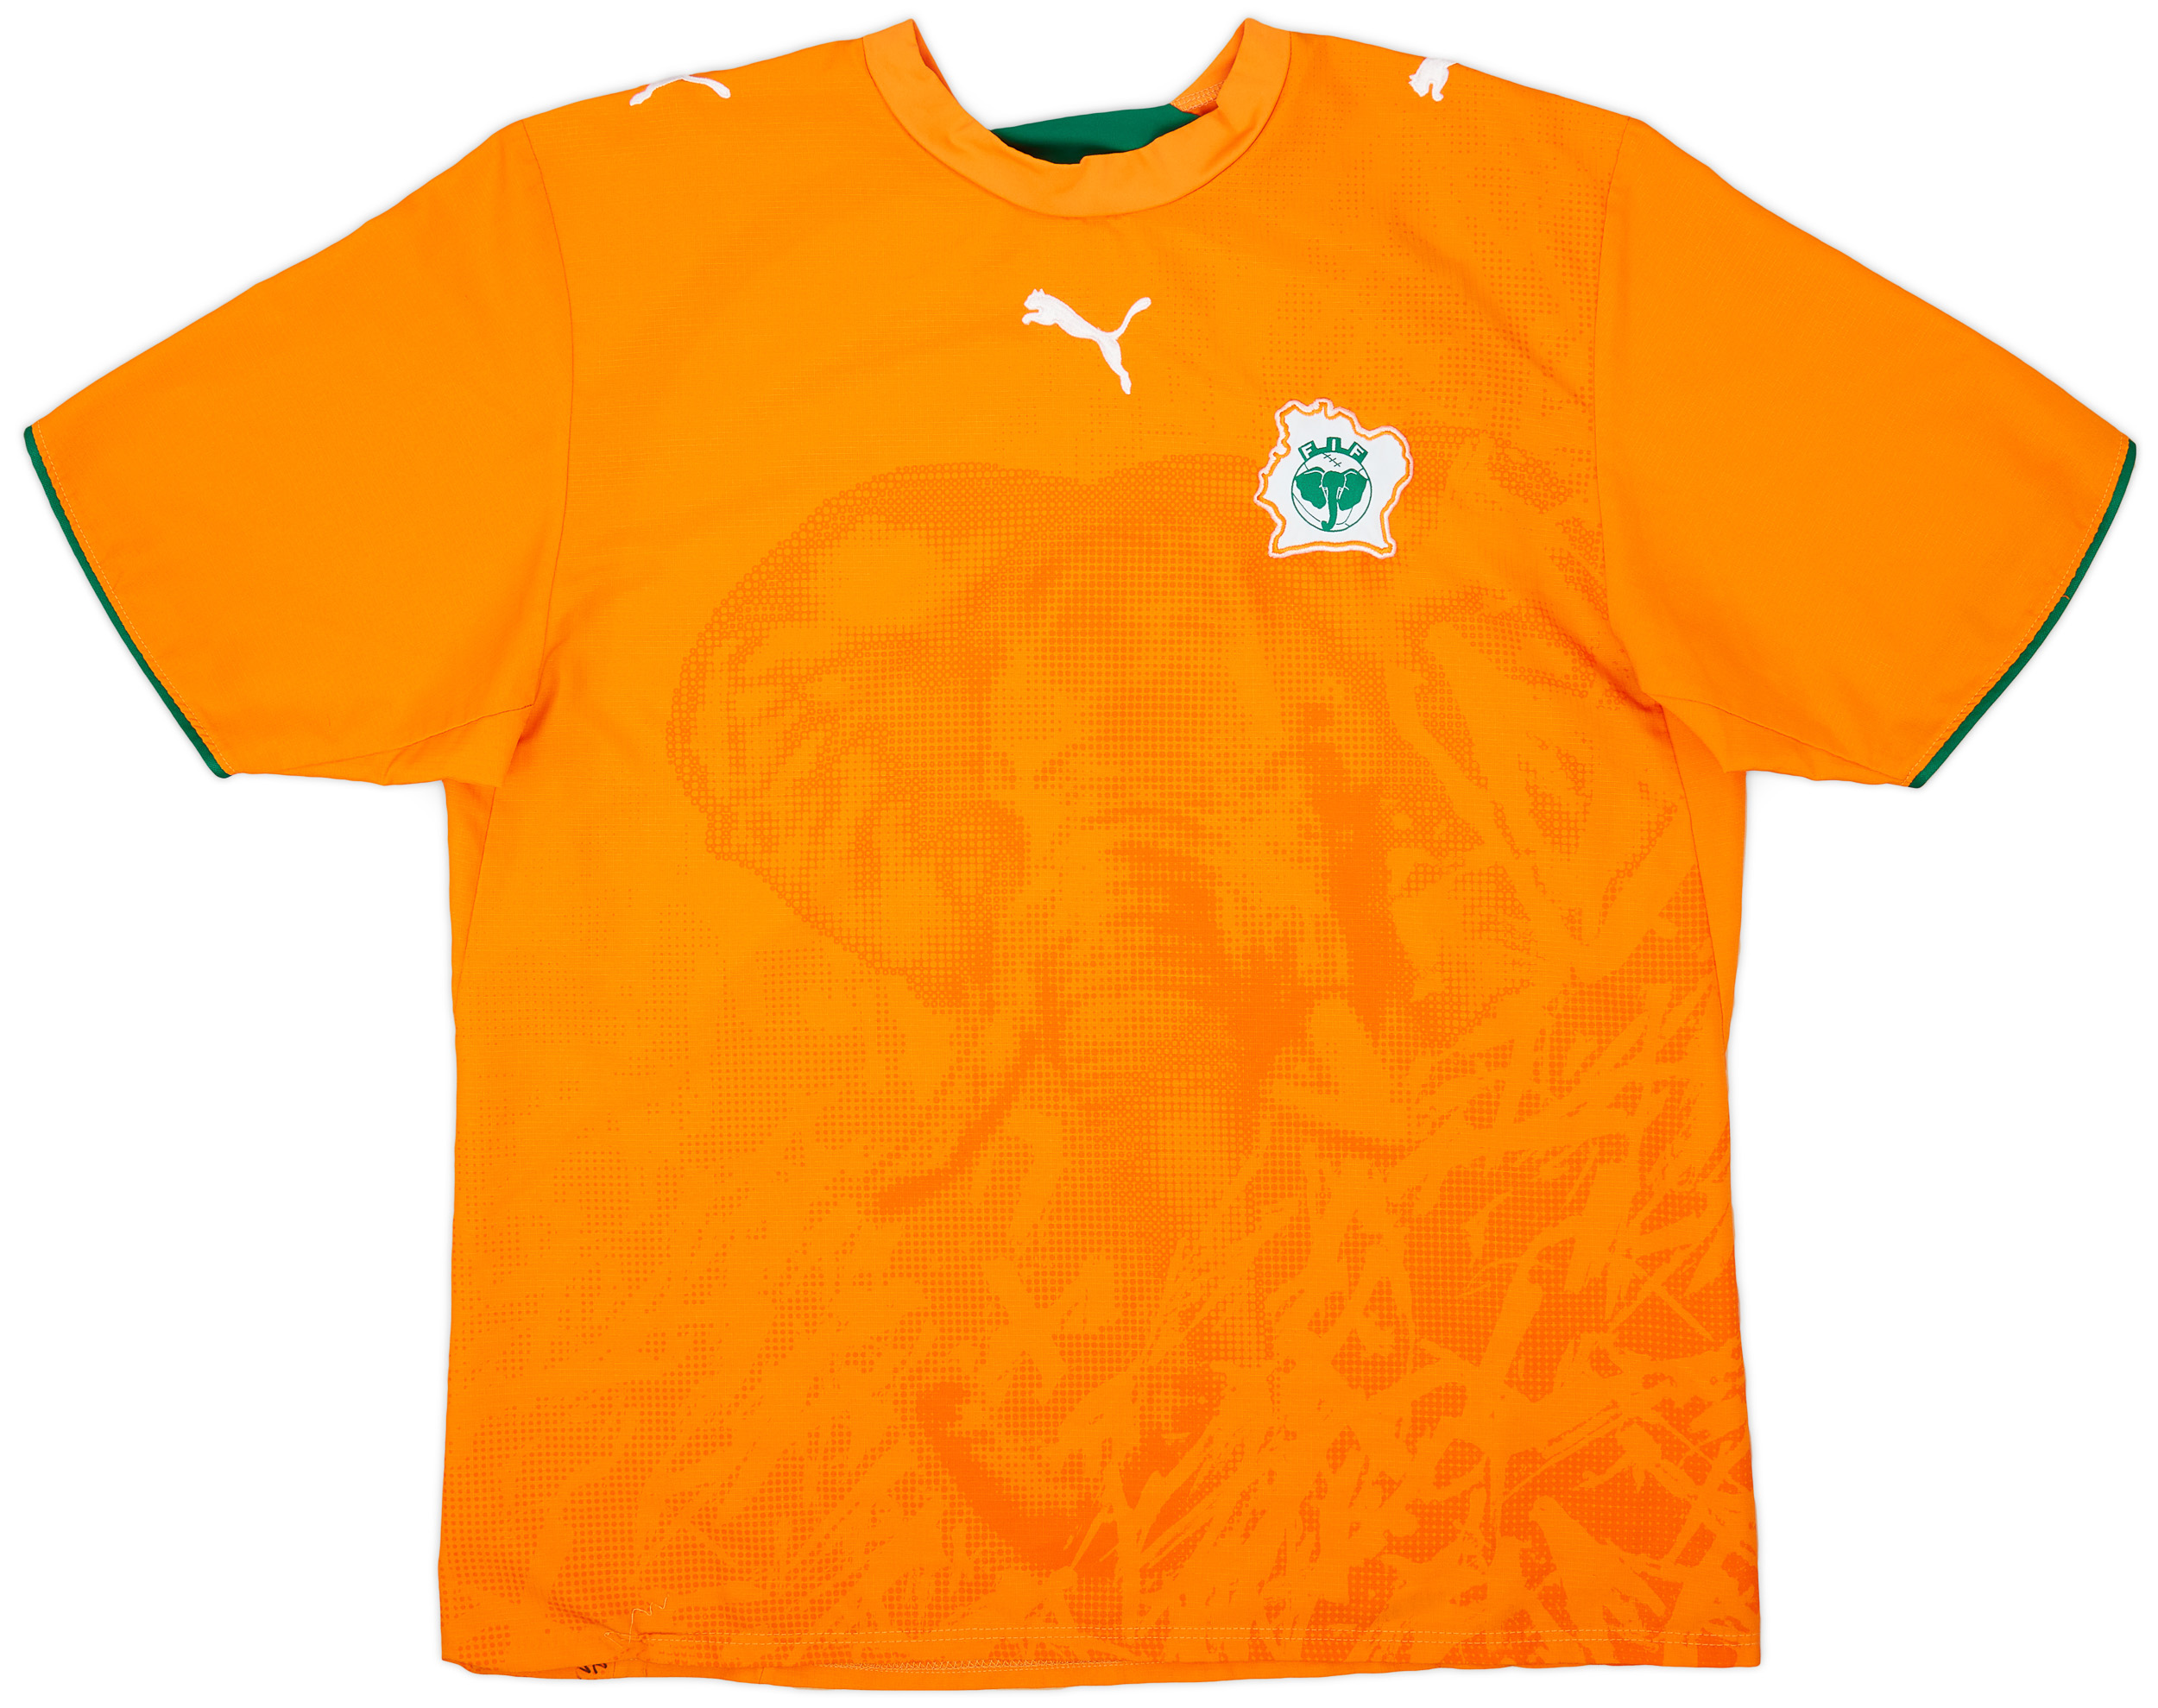 Retro Côte d'Ivoire Shirt